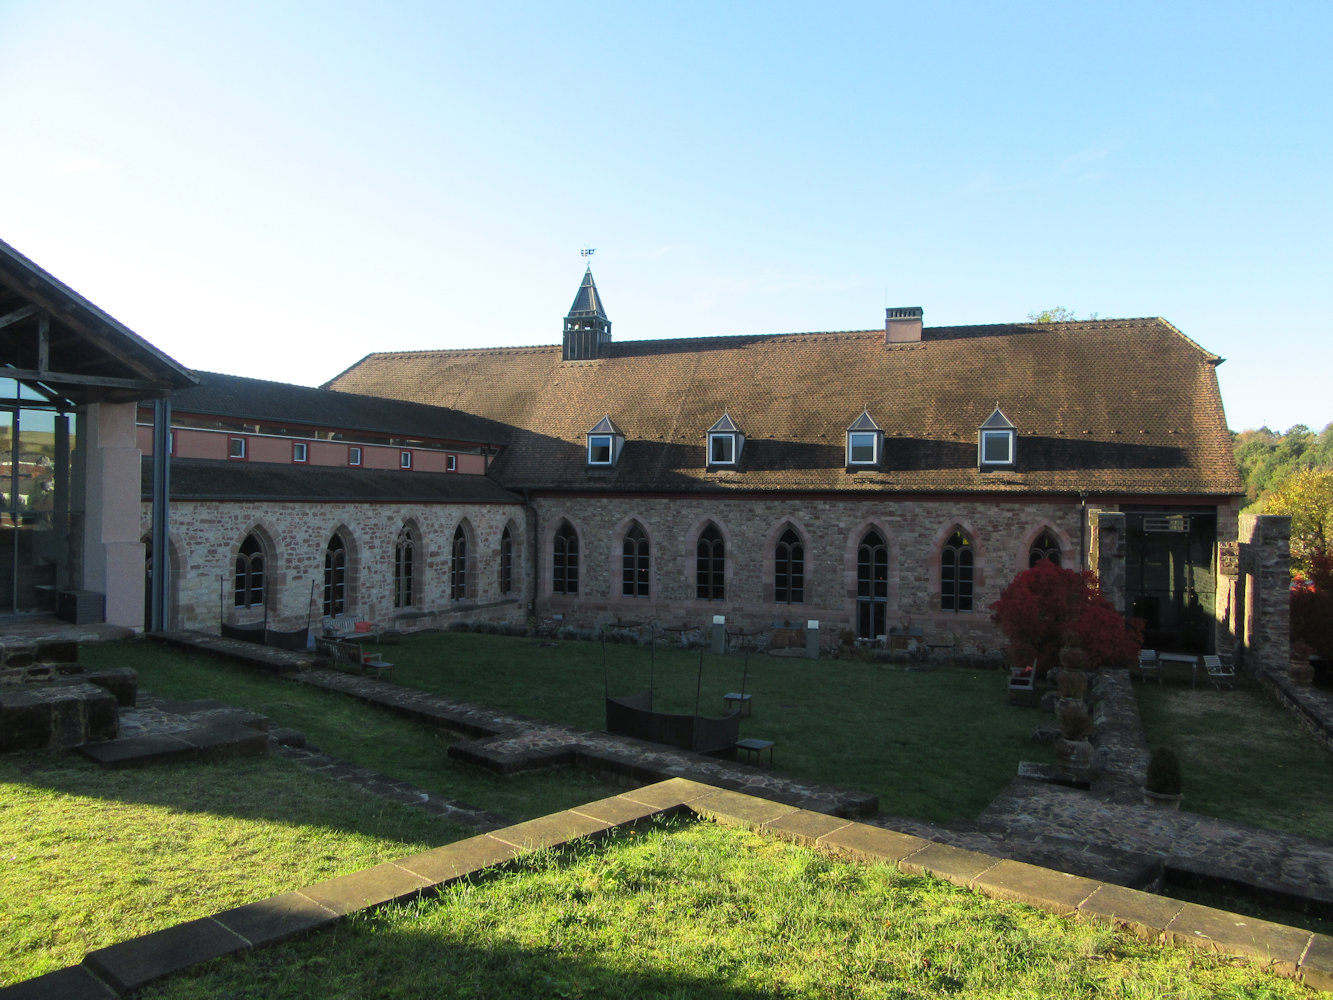 ehemaliges Kloster Hornbach, heute protestantische Kirche von 1786 und Hotel